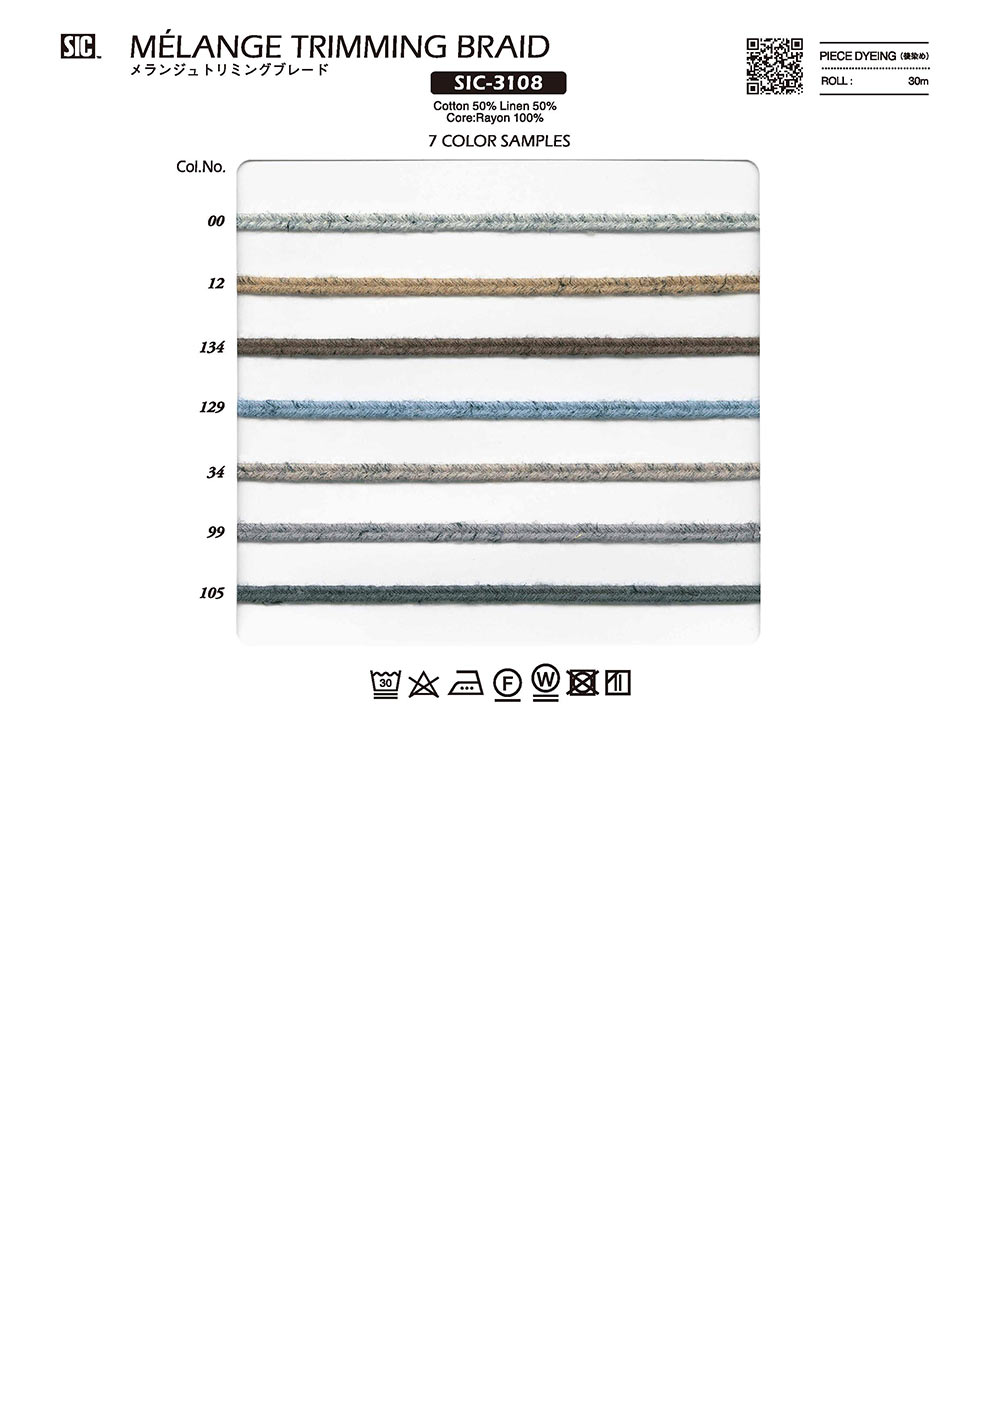 SIC-3108 Melange Trimming Braid[Ribbon Tape Cord] SHINDO(SIC)